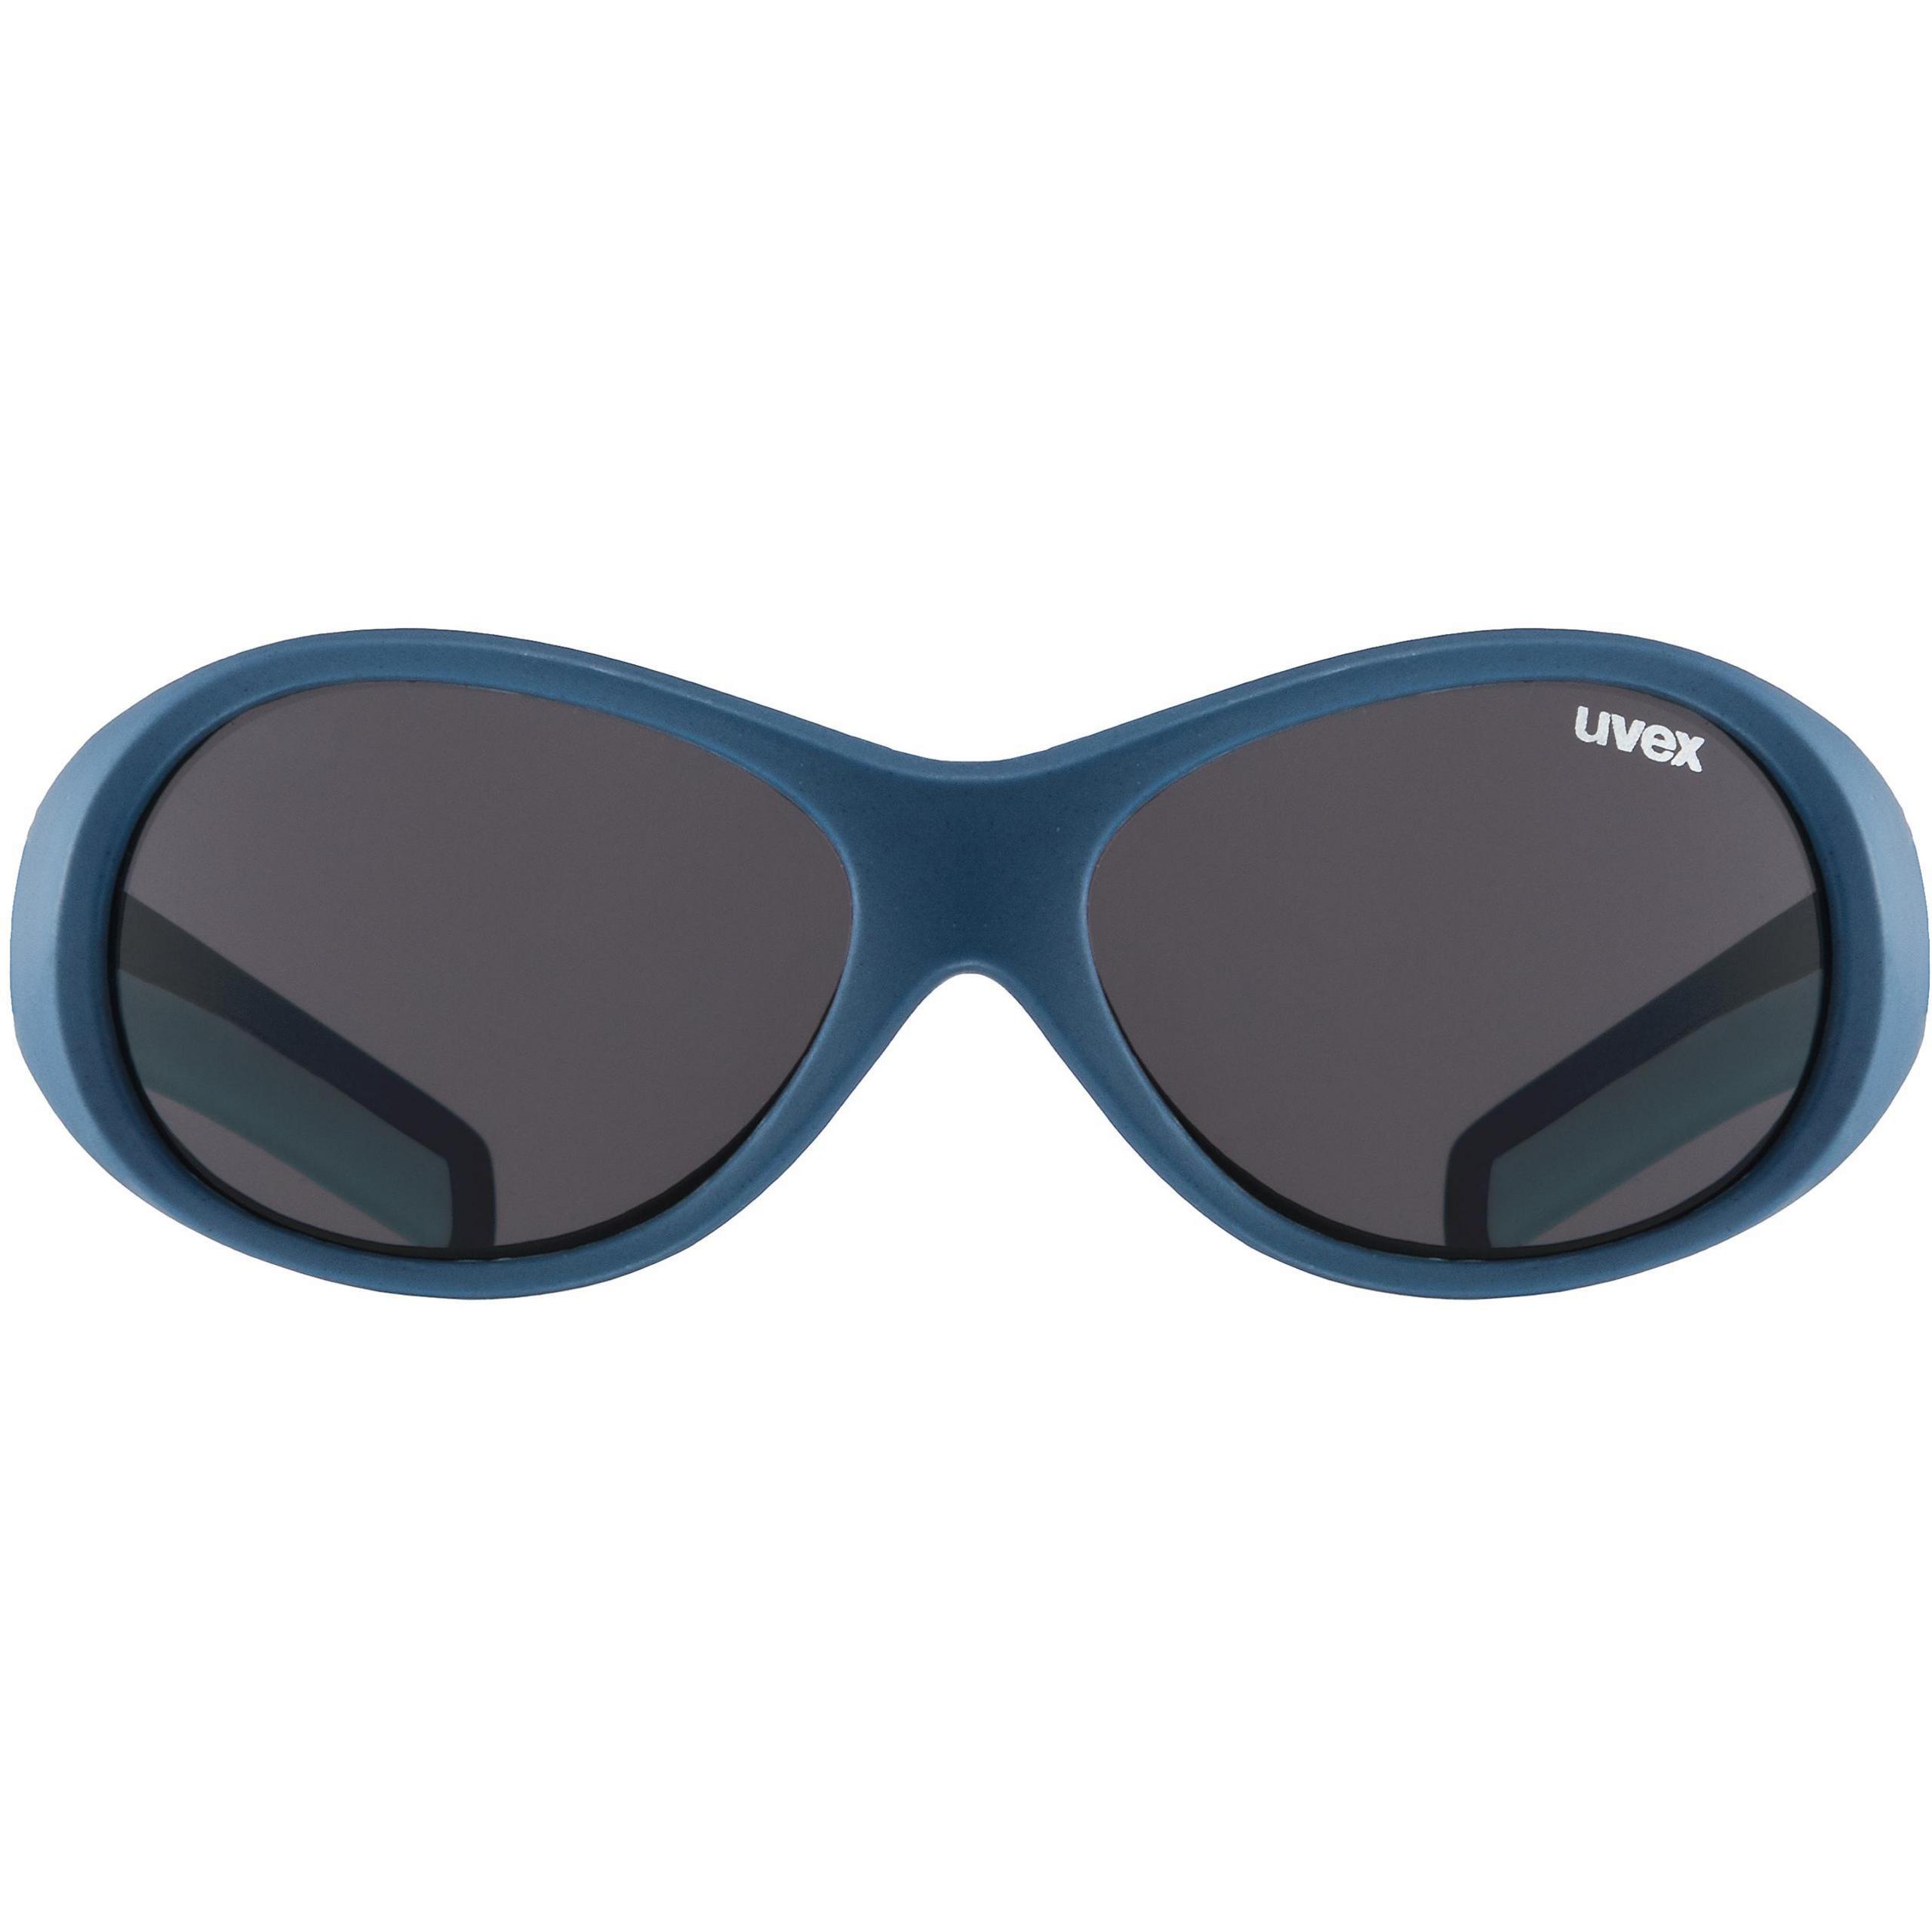 UVEX Sport style 510 Sport gafas de gafas de sol niños protección ultravioleta gafas s53202947 